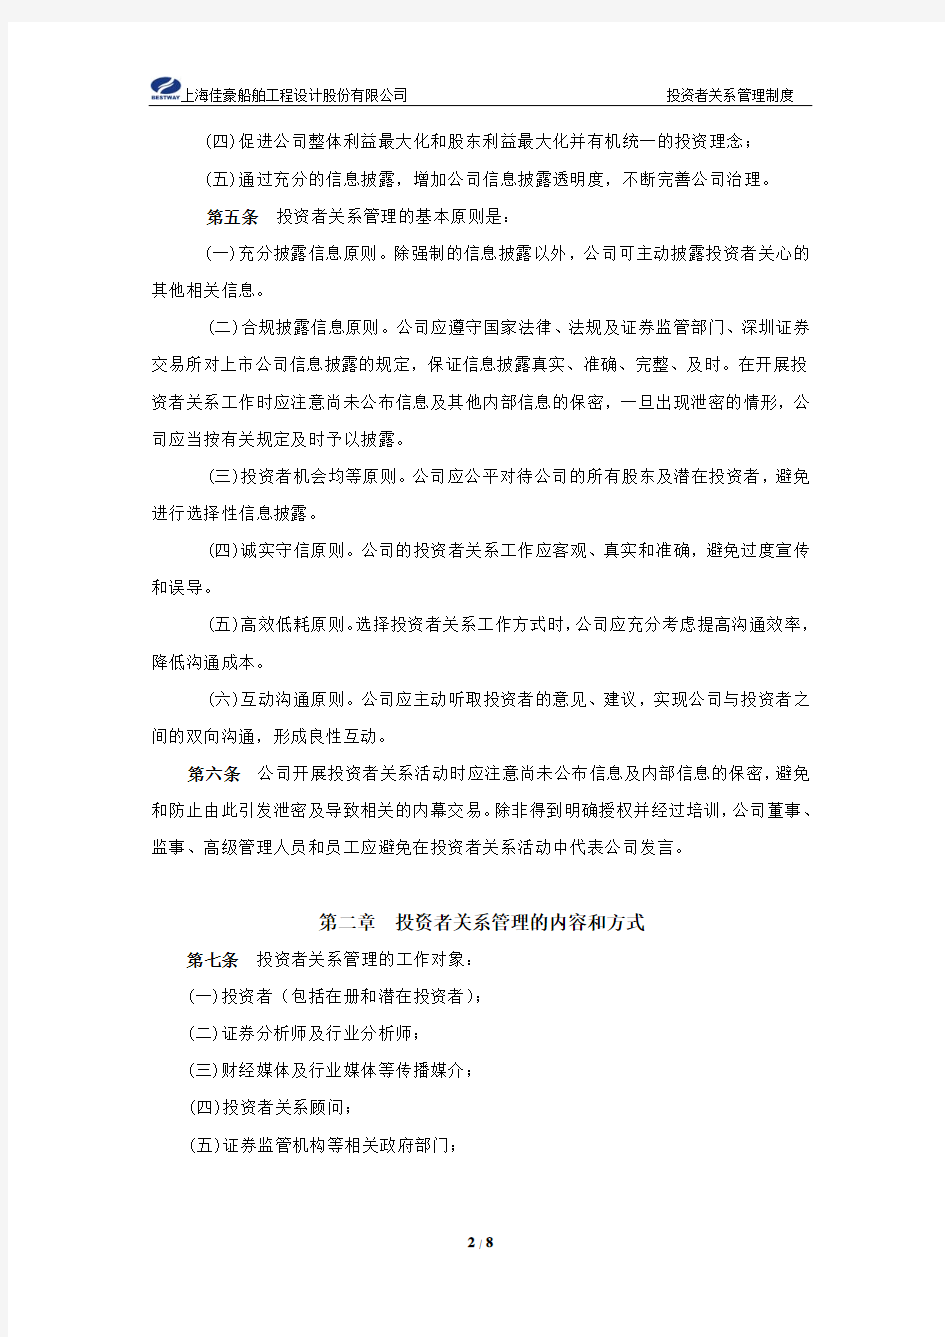 上海佳豪：投资者关系管理制度(2010年2月) 2010-02-09